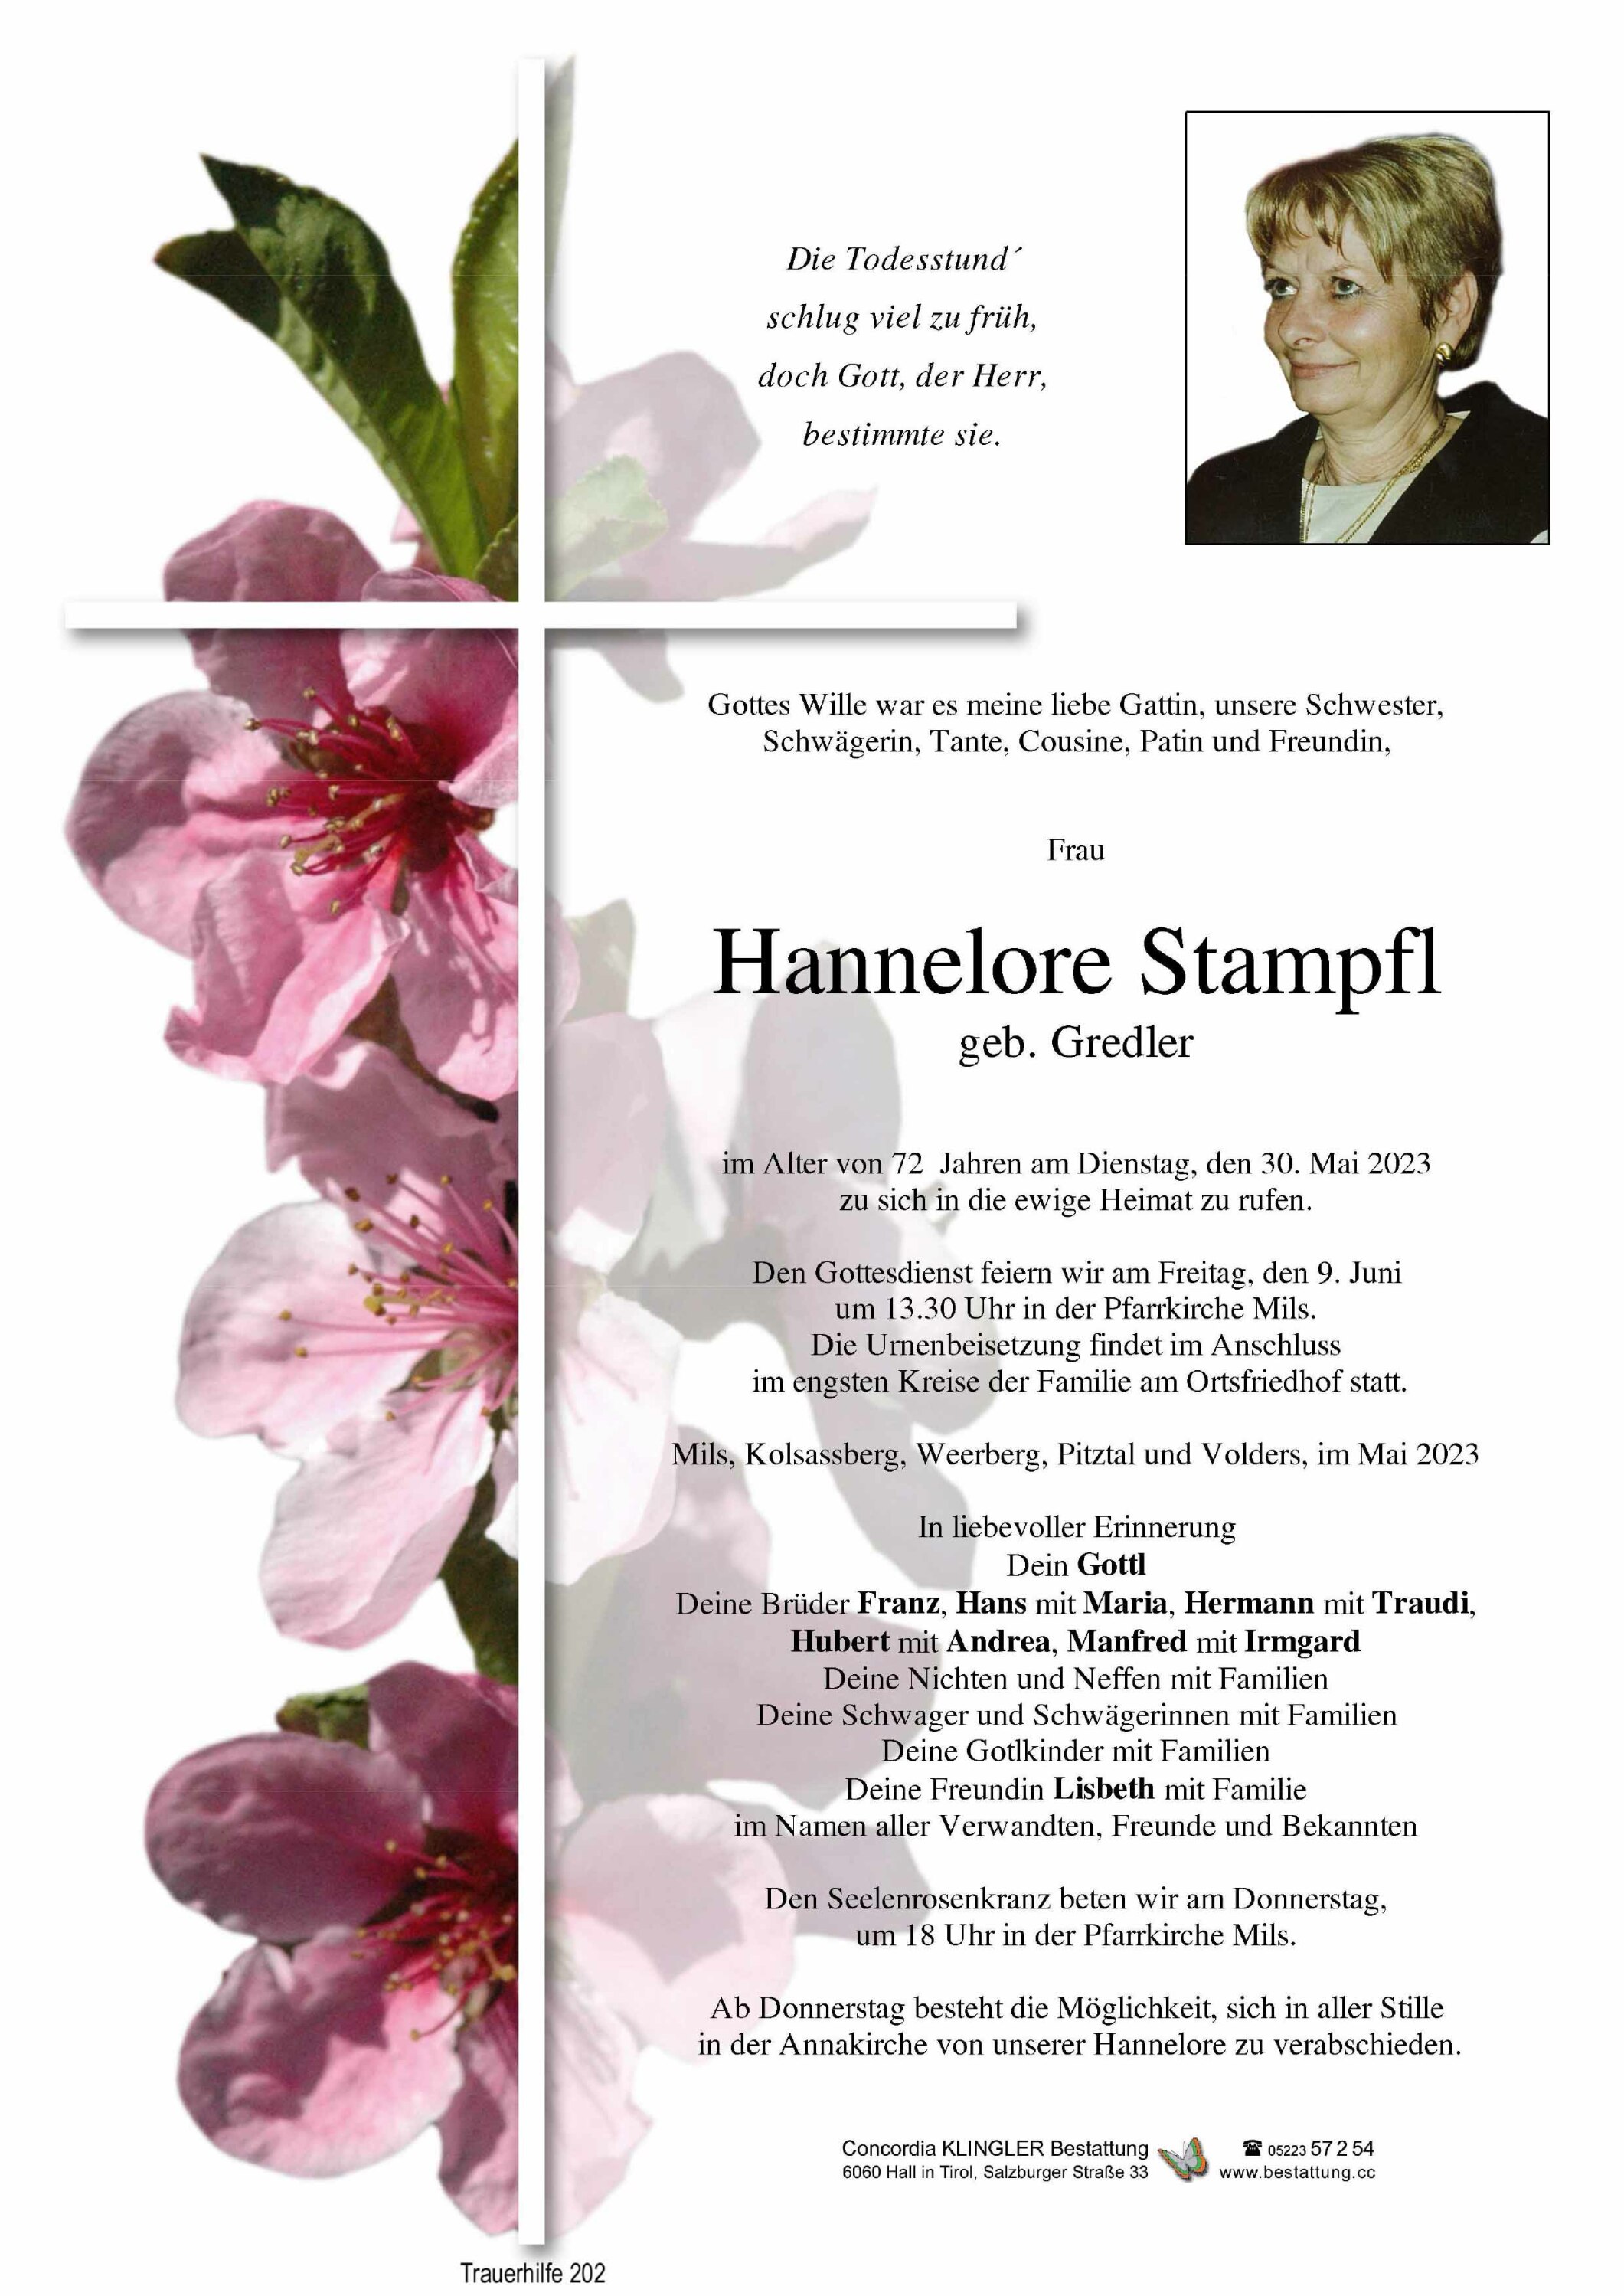 Hannelore Stampfl 